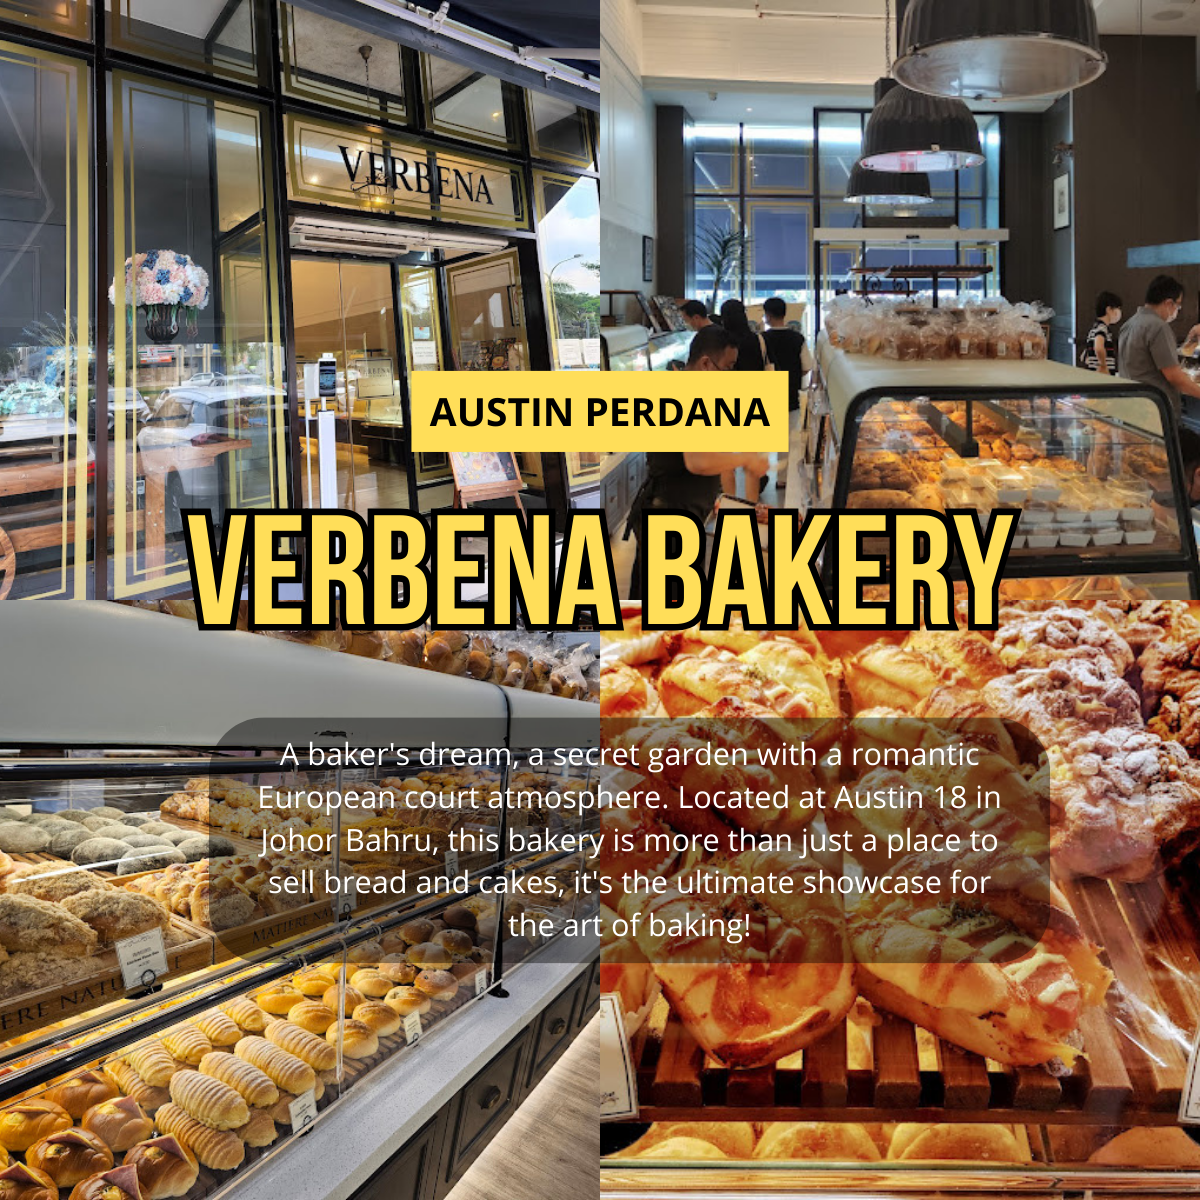 Verbena Patisserie Shop: A Slice of Europe in Austin Perdana